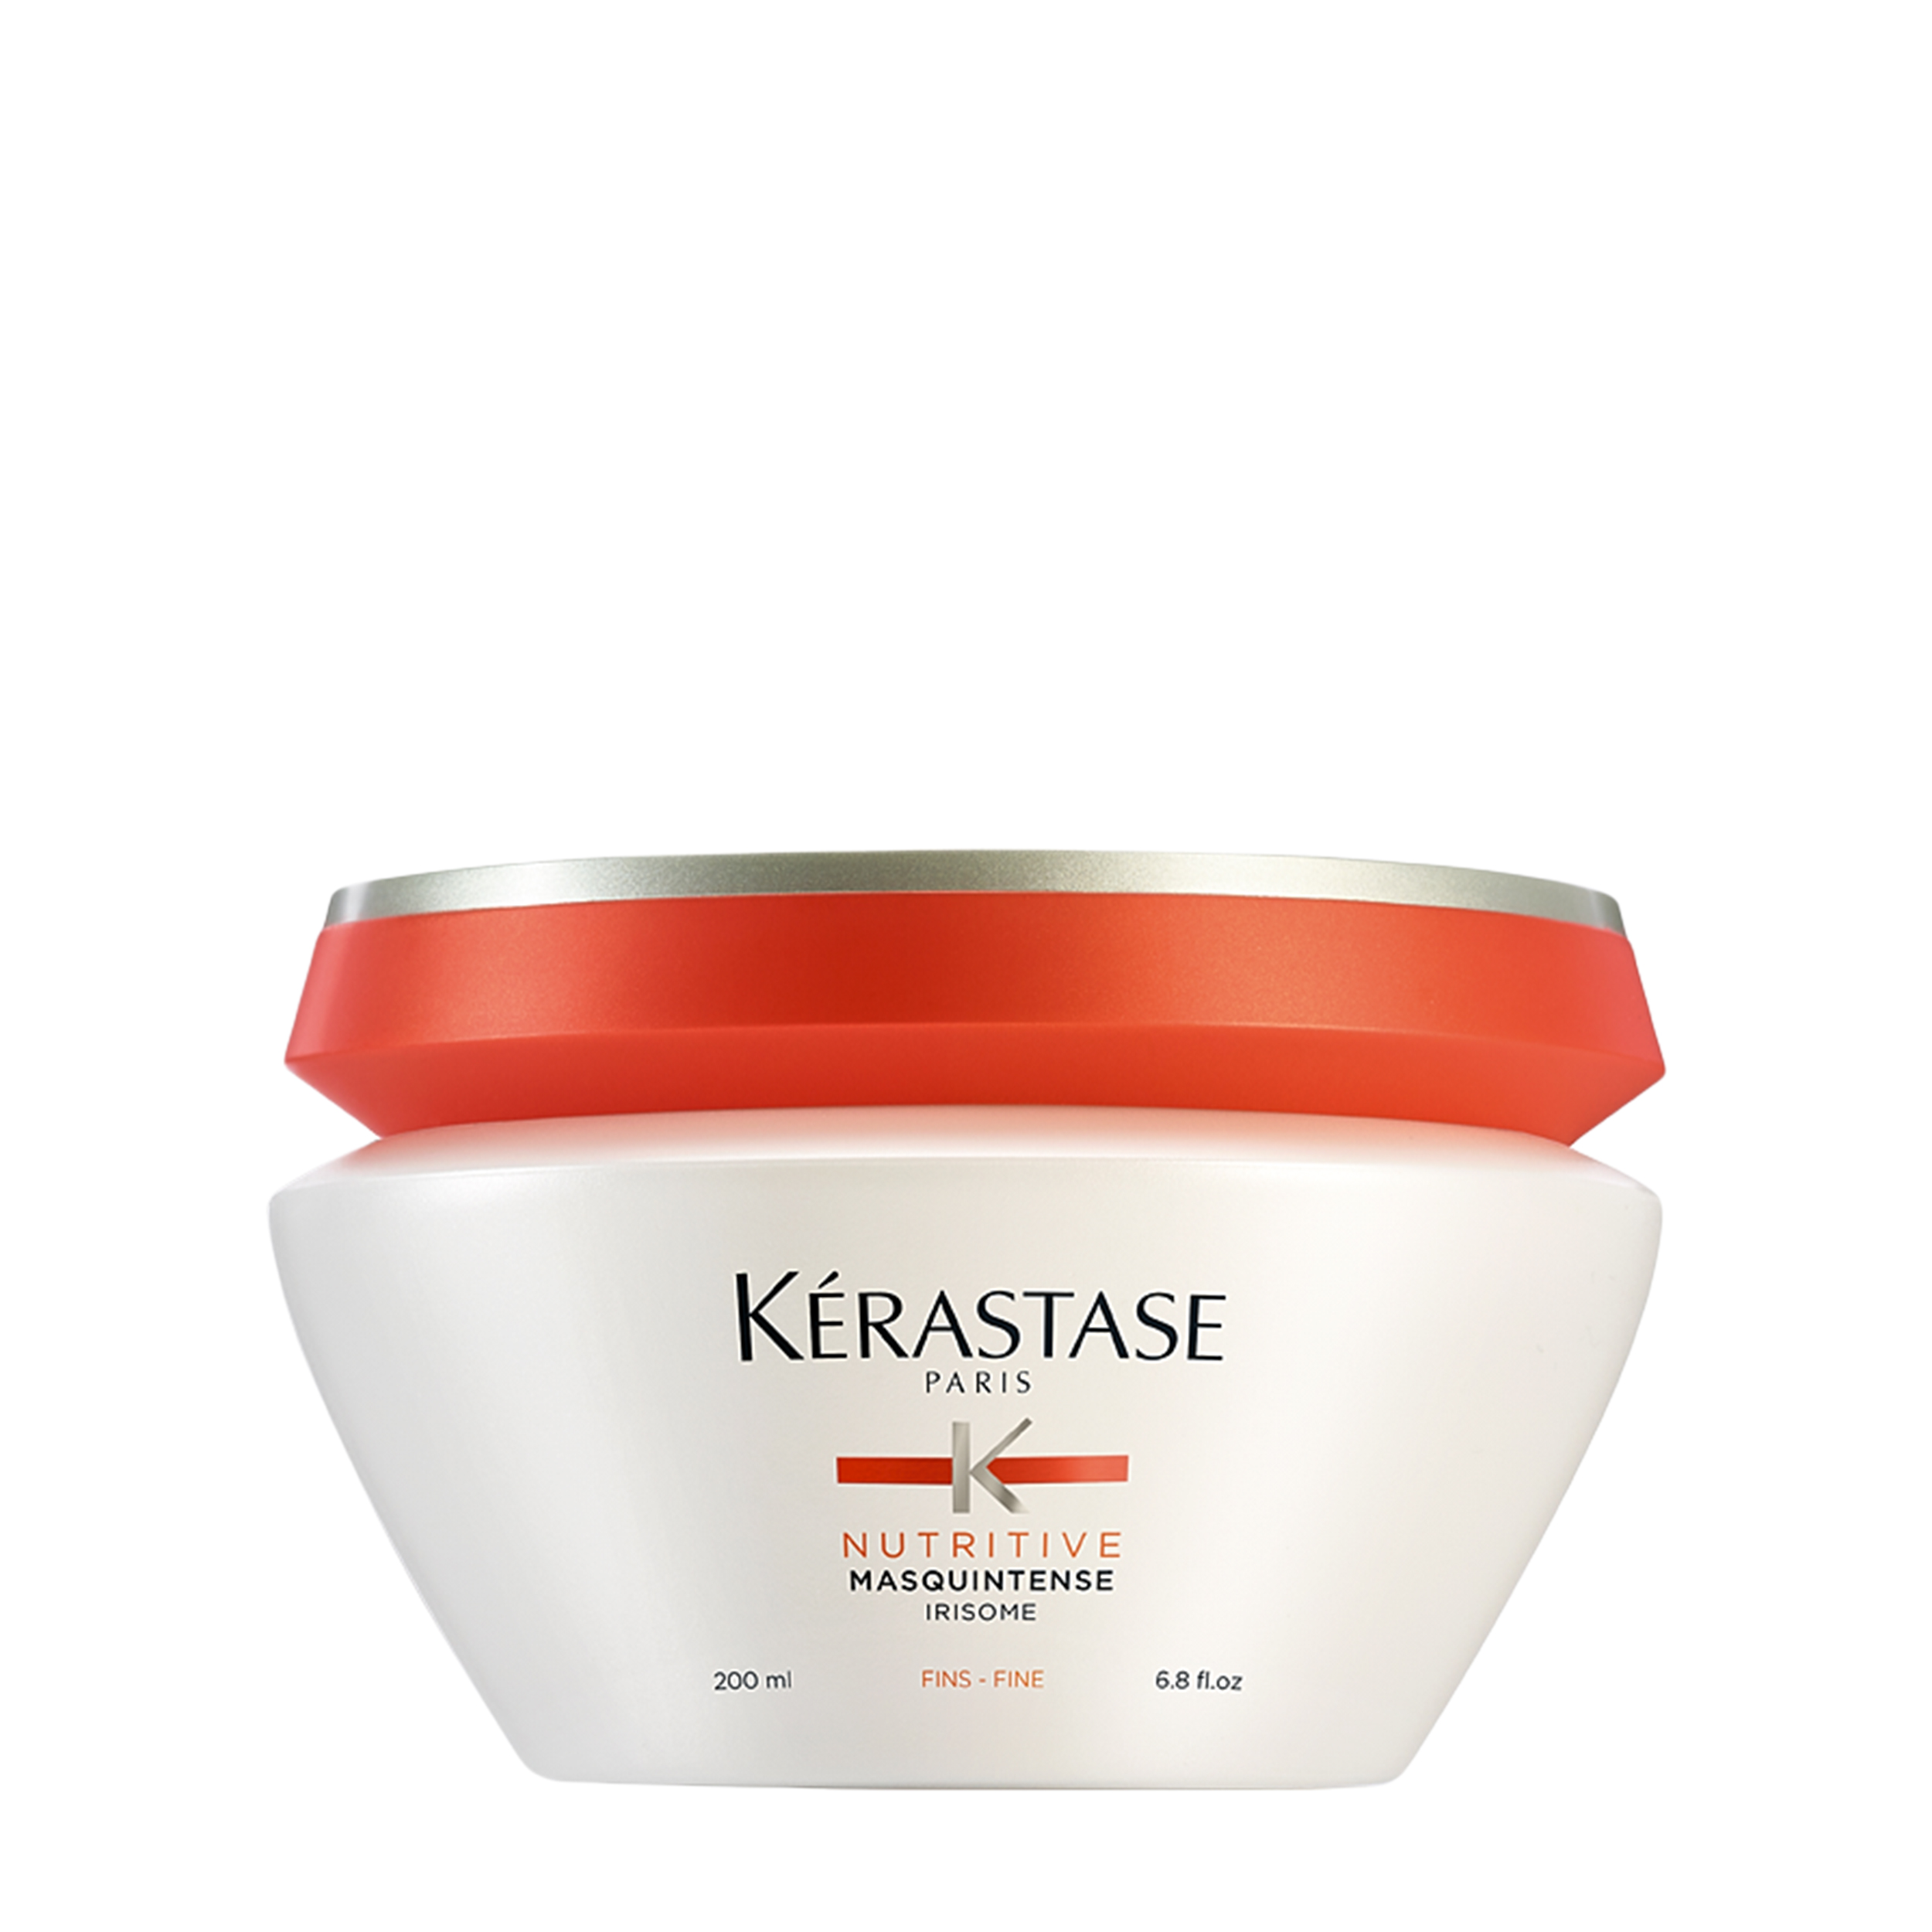 Kerastase Kerastase Маска для волос Nutritive Irisome Masquintense 200 мл от Foambox